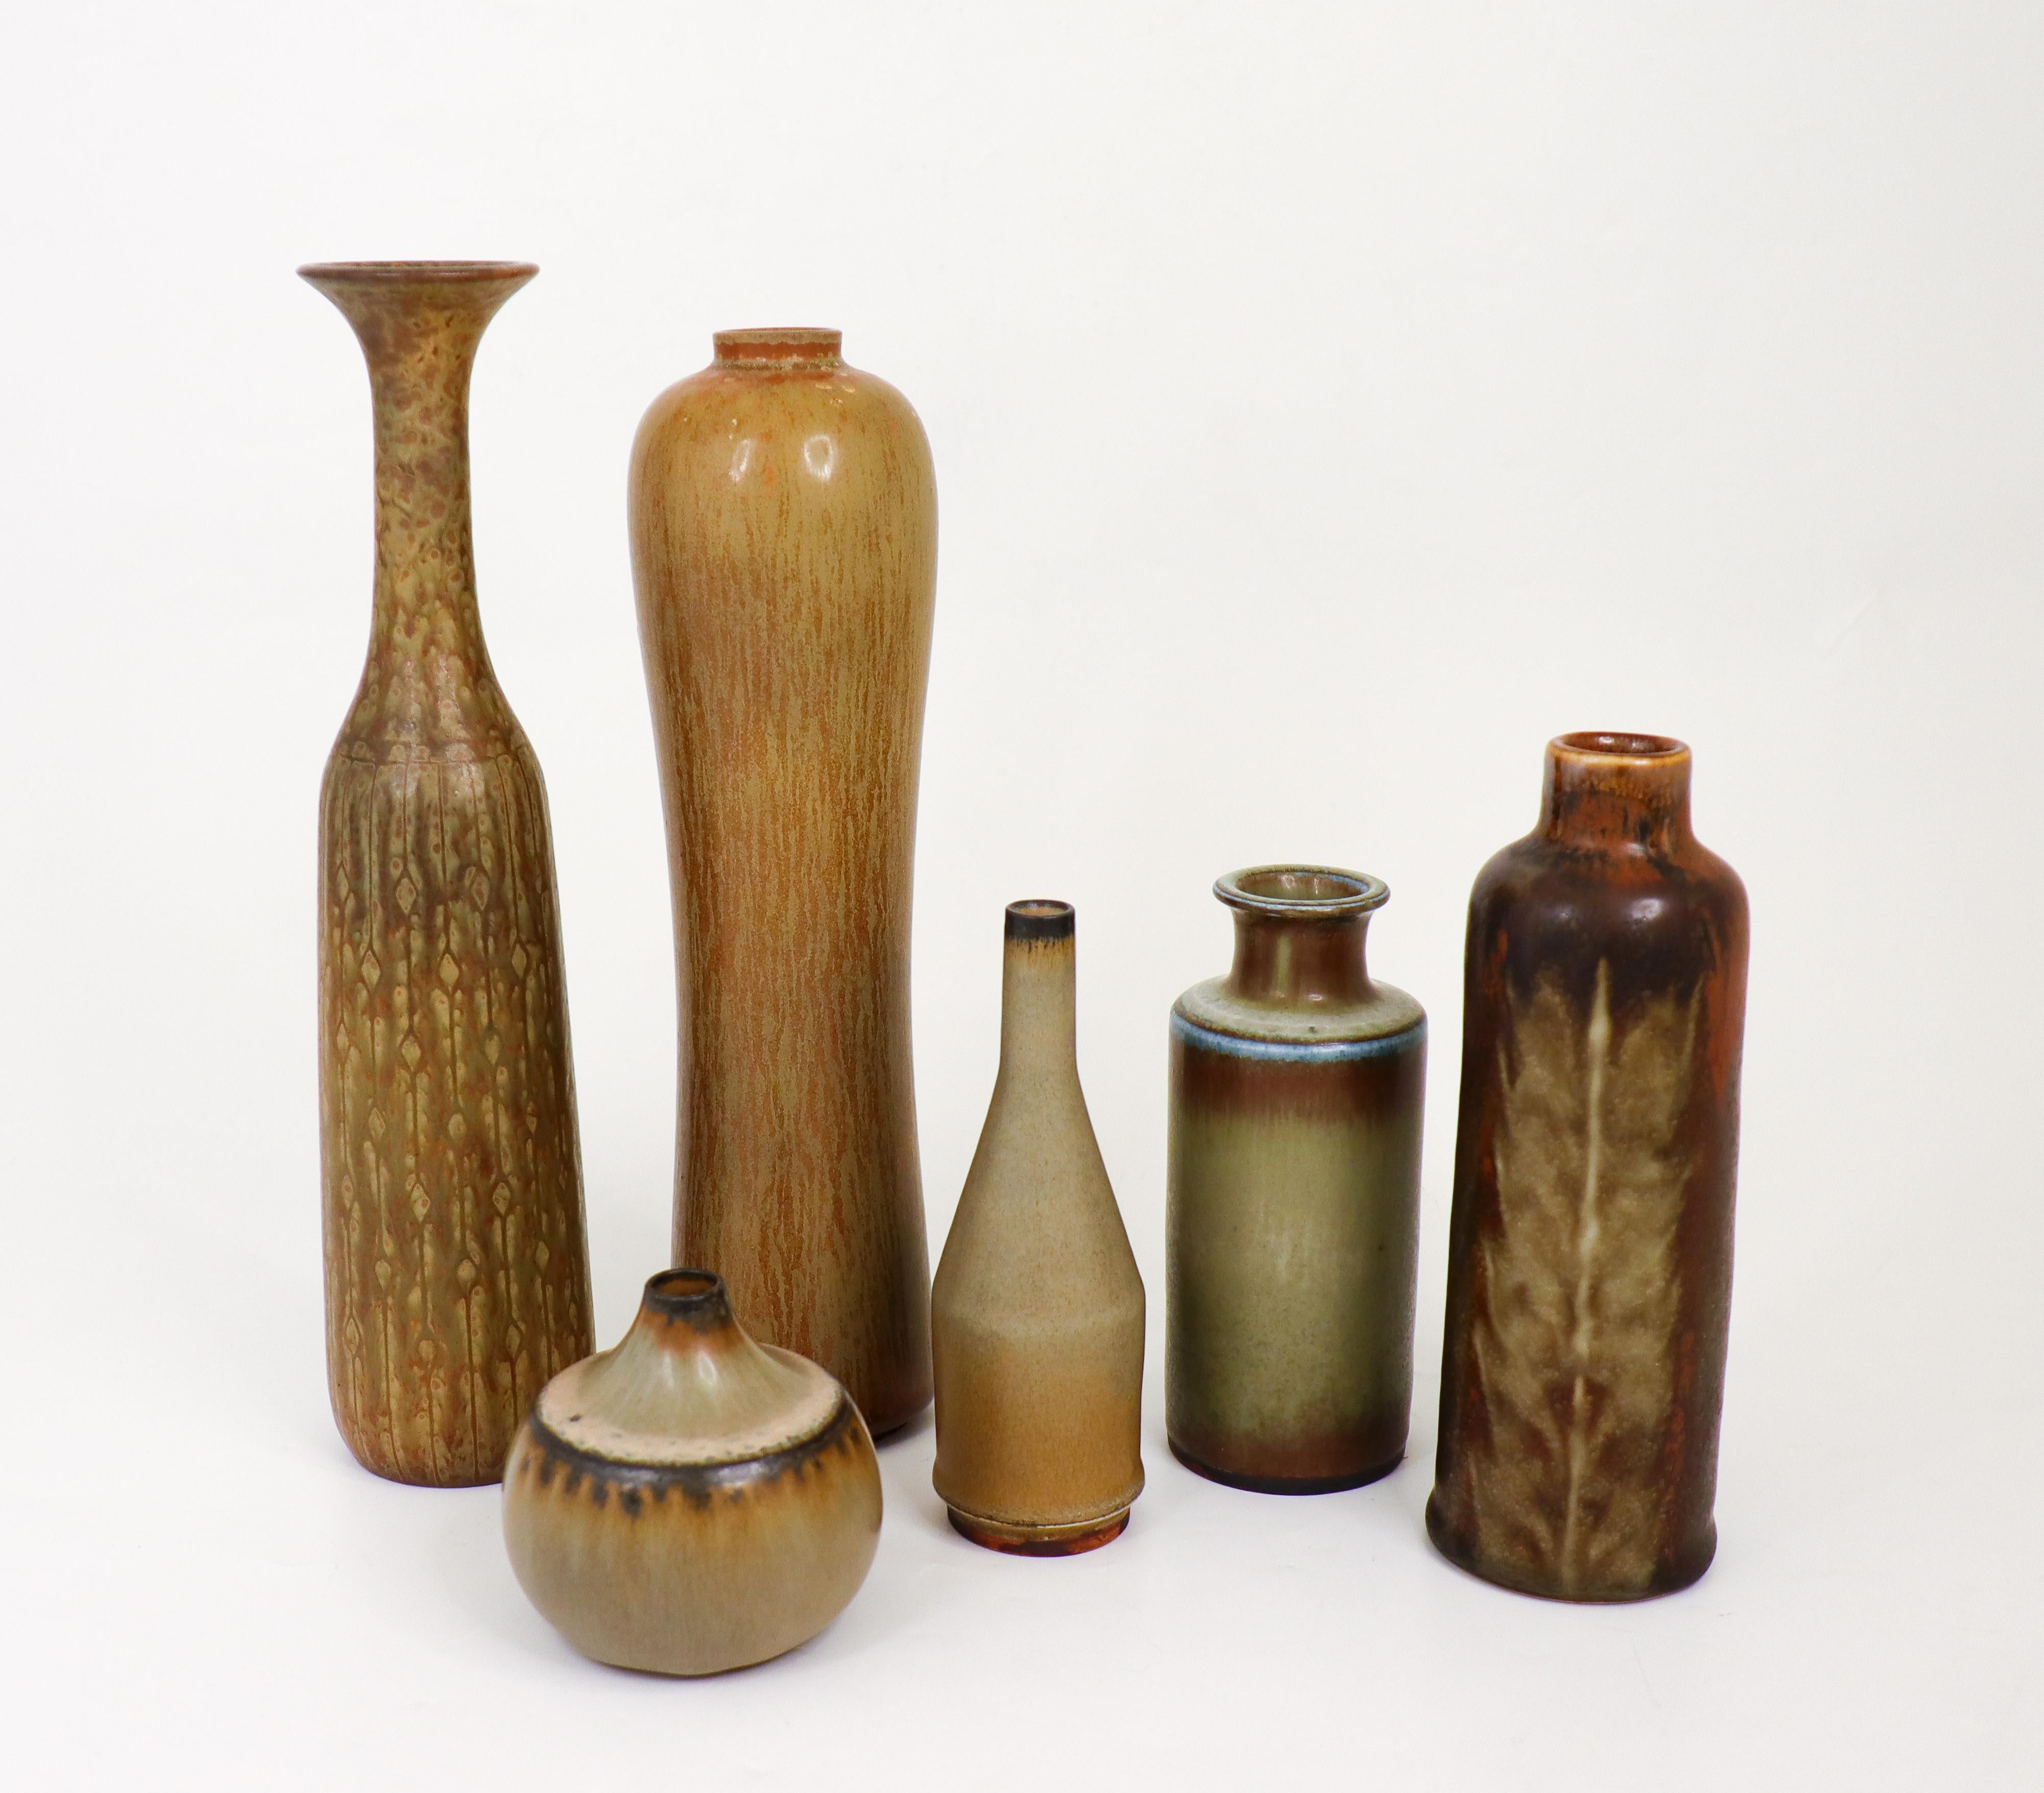 Eine Gruppe von zwei Vasen, entworfen von Gunnar Nylund, und vier Vasen von Carl-Harry Stålhane in Rörstrand in den 1950er und 1960er Jahren.  Die Vasen sind zwischen 6,5 und 25,5 cm hoch und in ausgezeichnetem Zustand. Zwei der Vasen sind 2.